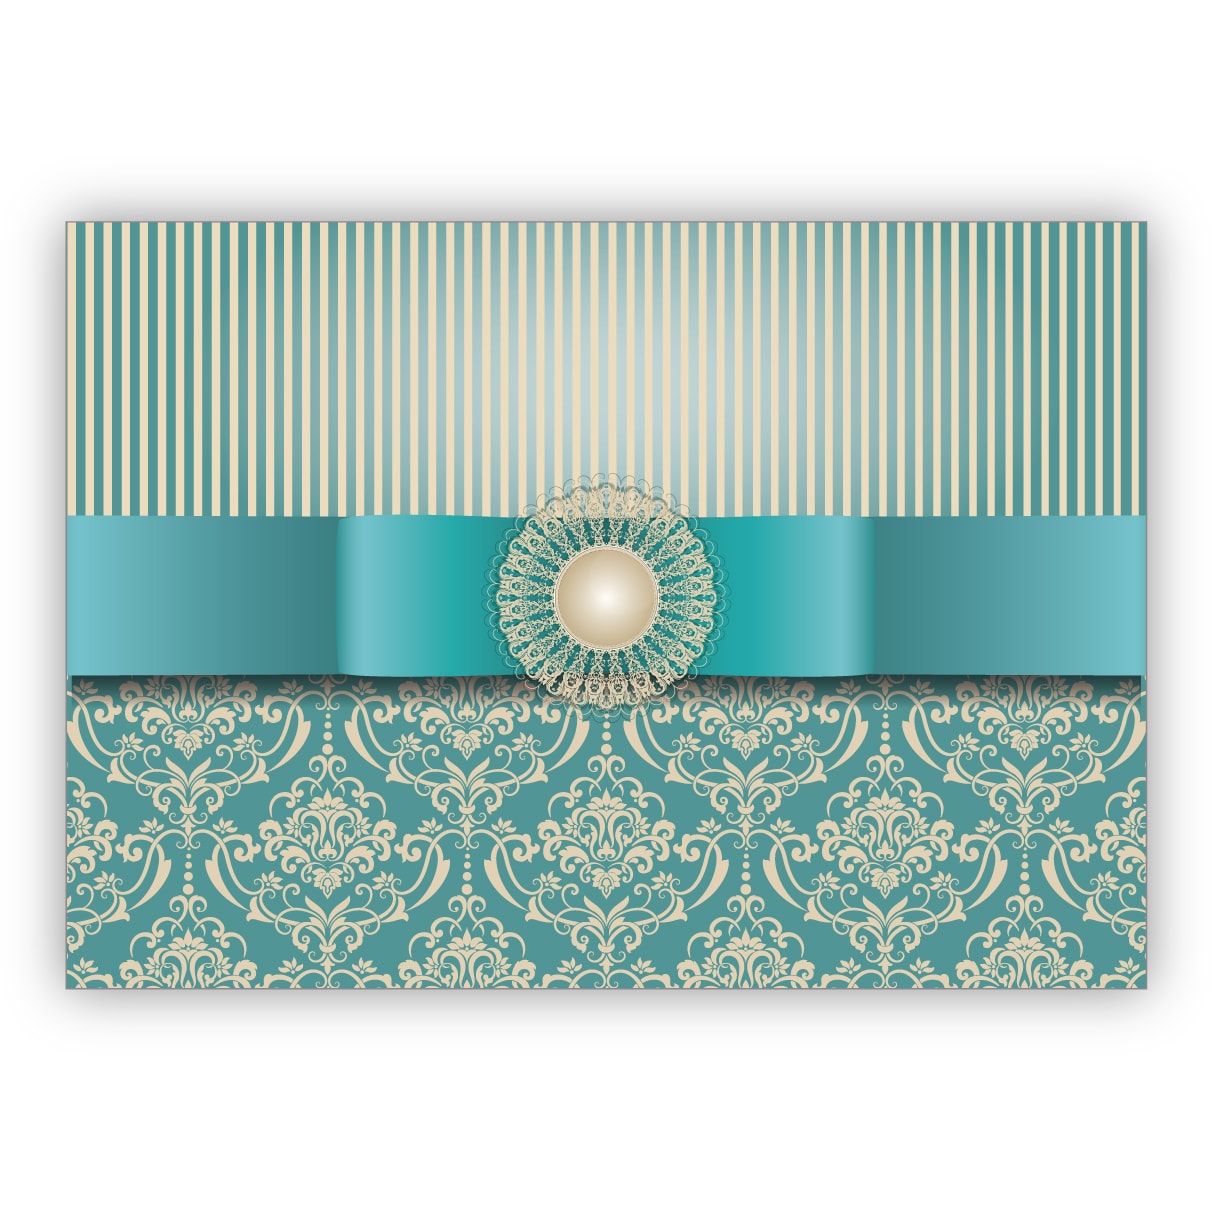 Vornehme Grußkarte im edlem Retro Look mit Vintage Damast Muster toll als Glückwunsch oder Einladung, hellblau türkis